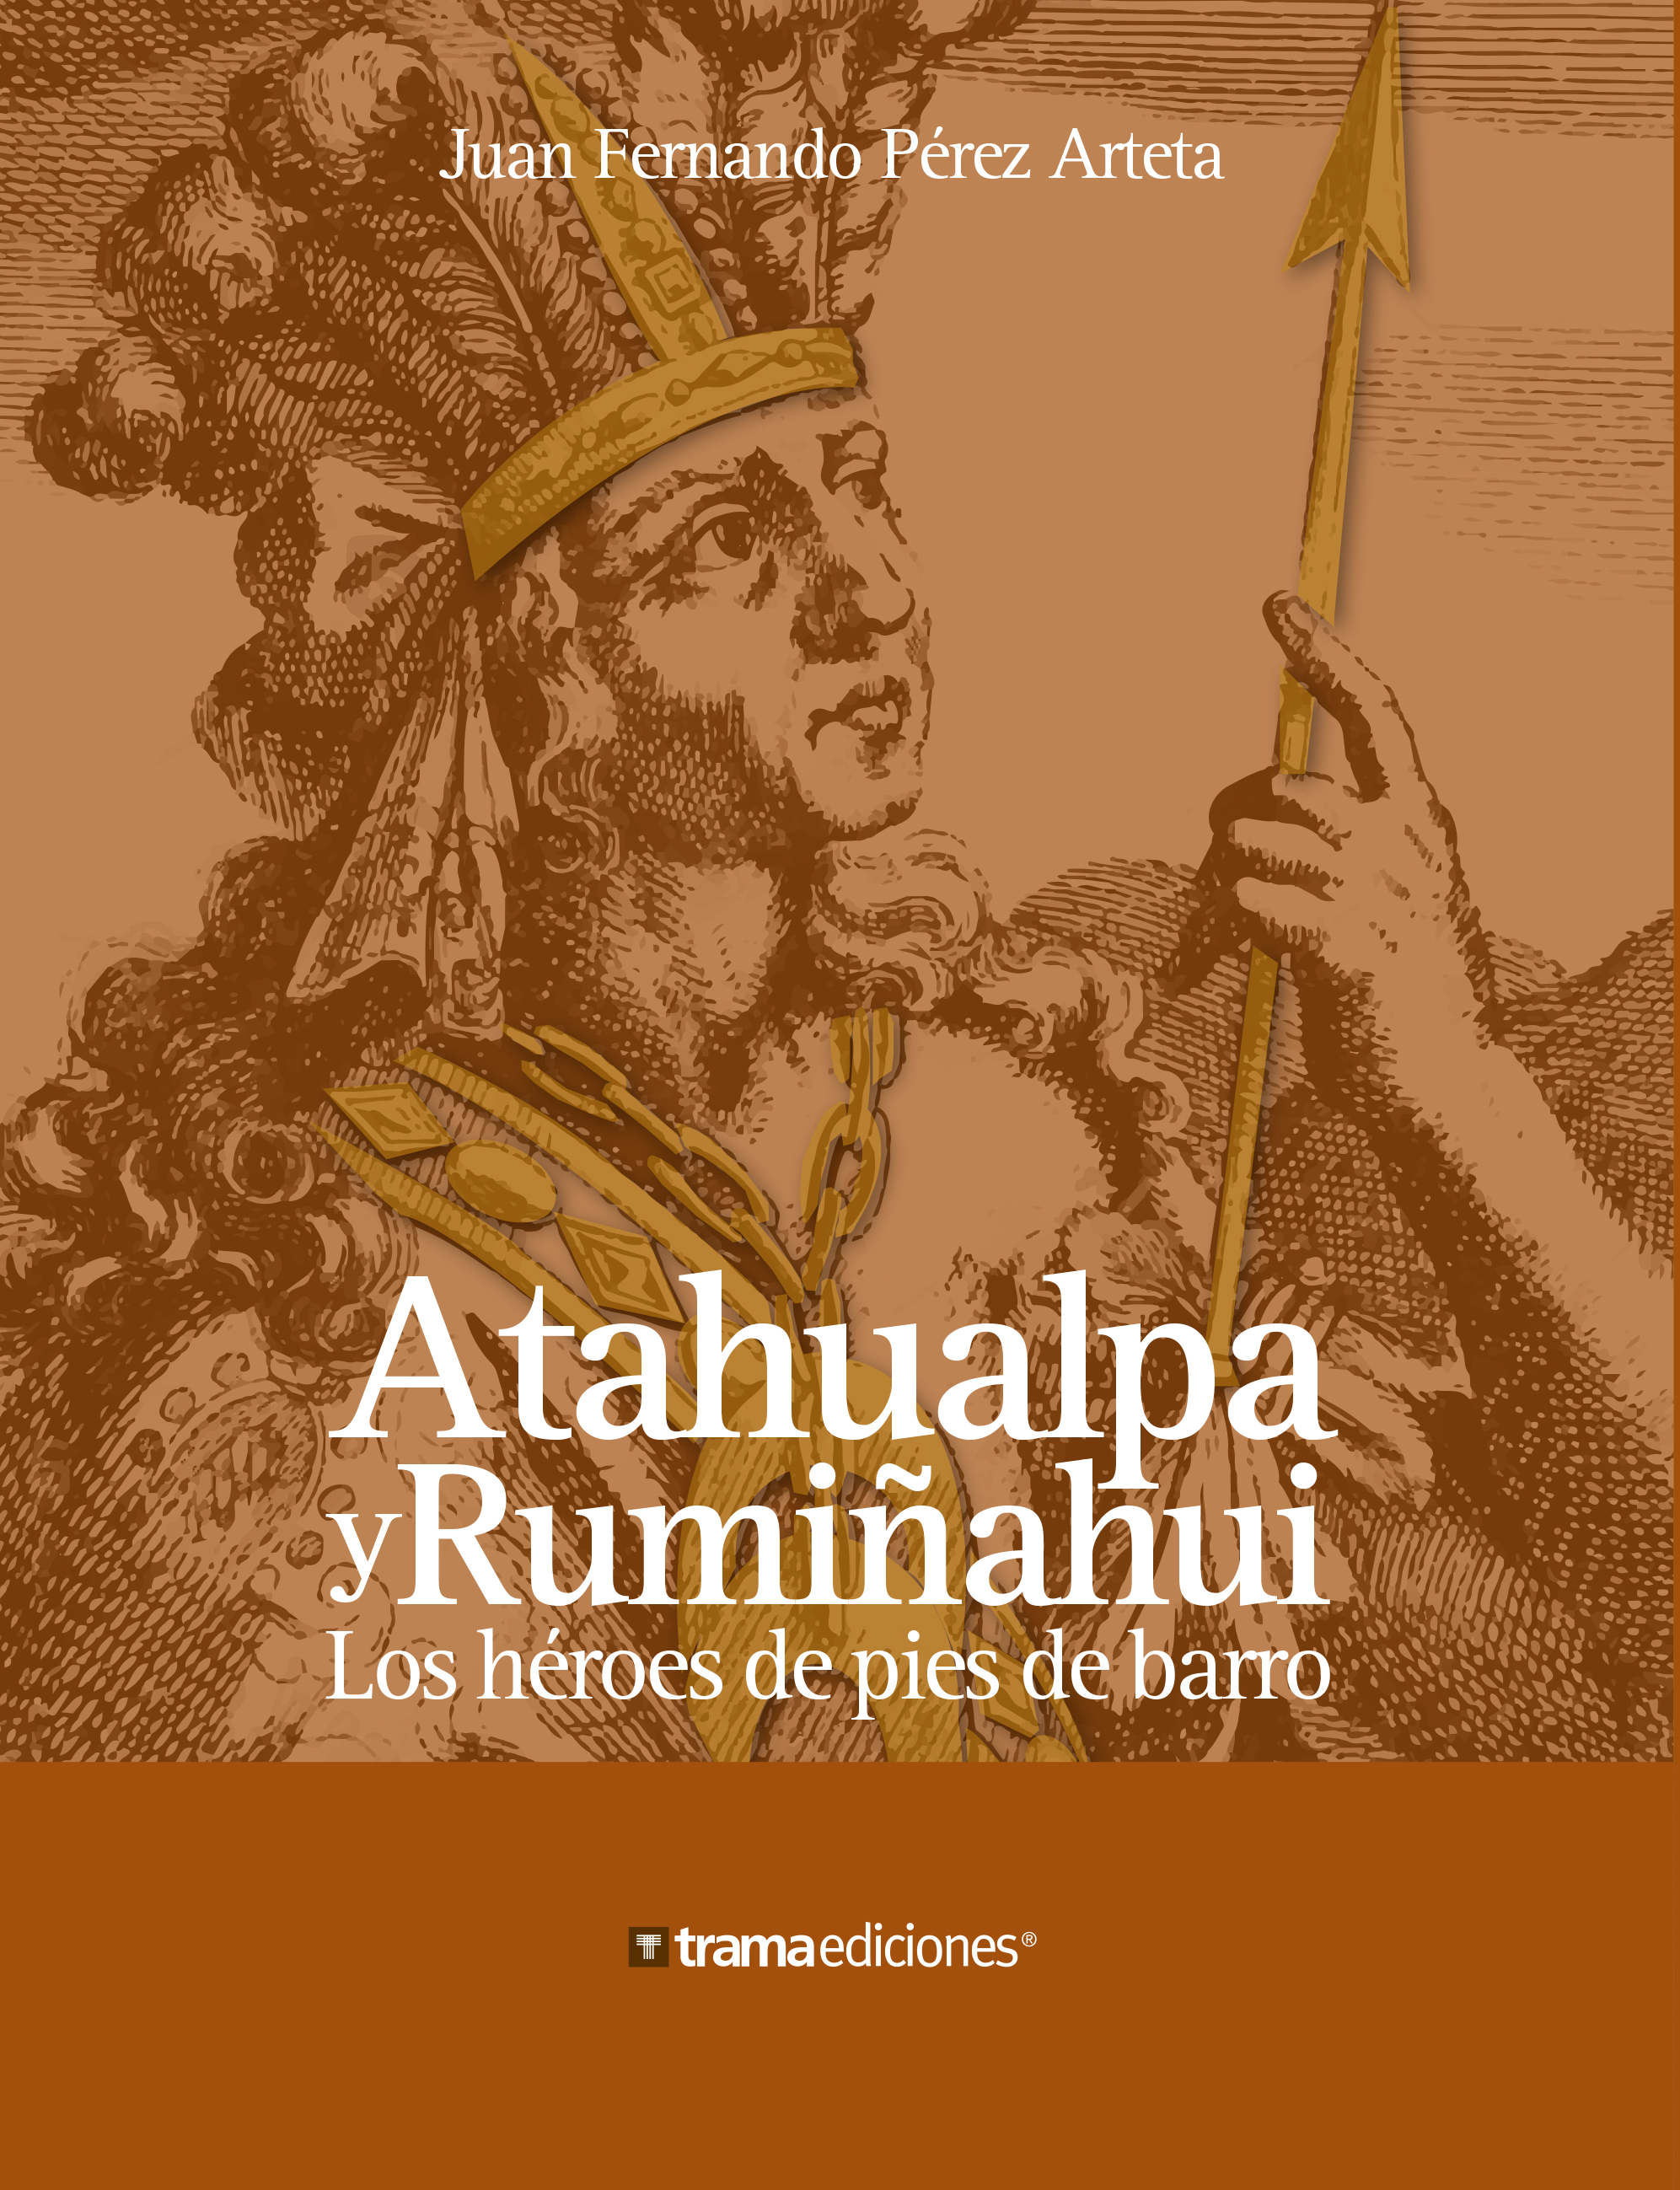 Atahualpa y Rumiñahui, los héroes “quiteños” de pies de barro